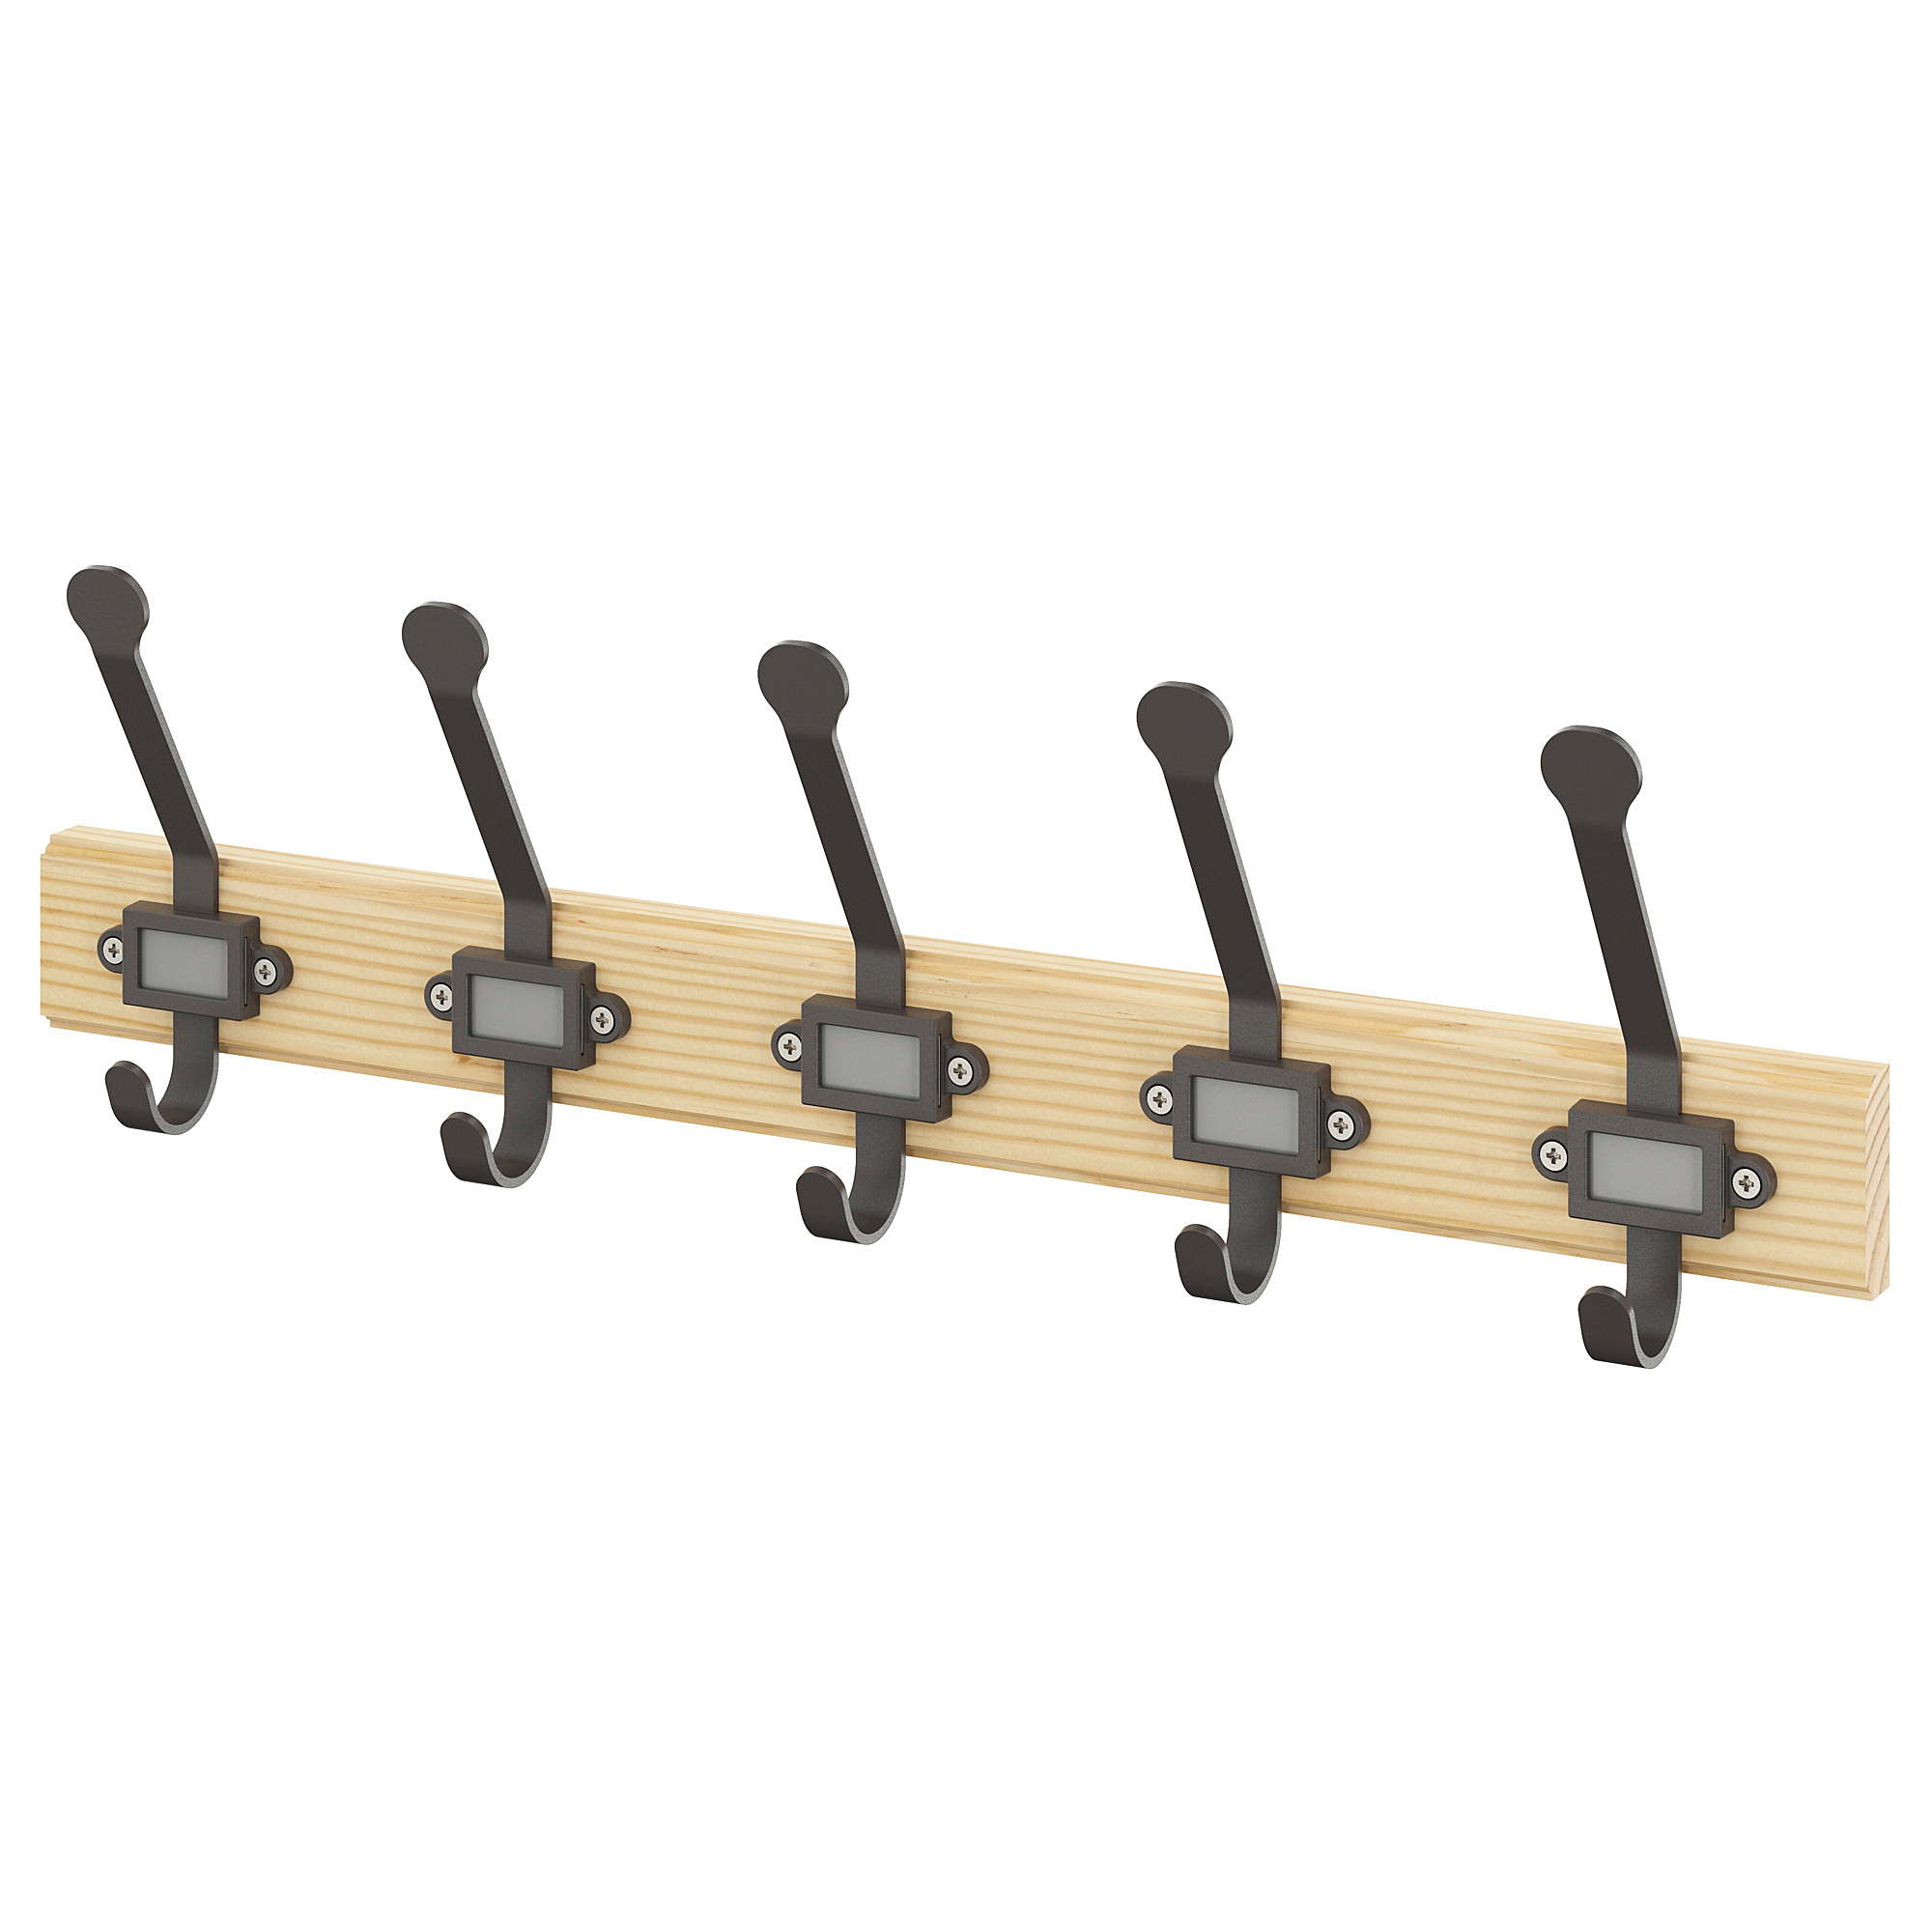 KARTOTEK rack with 5 hooks